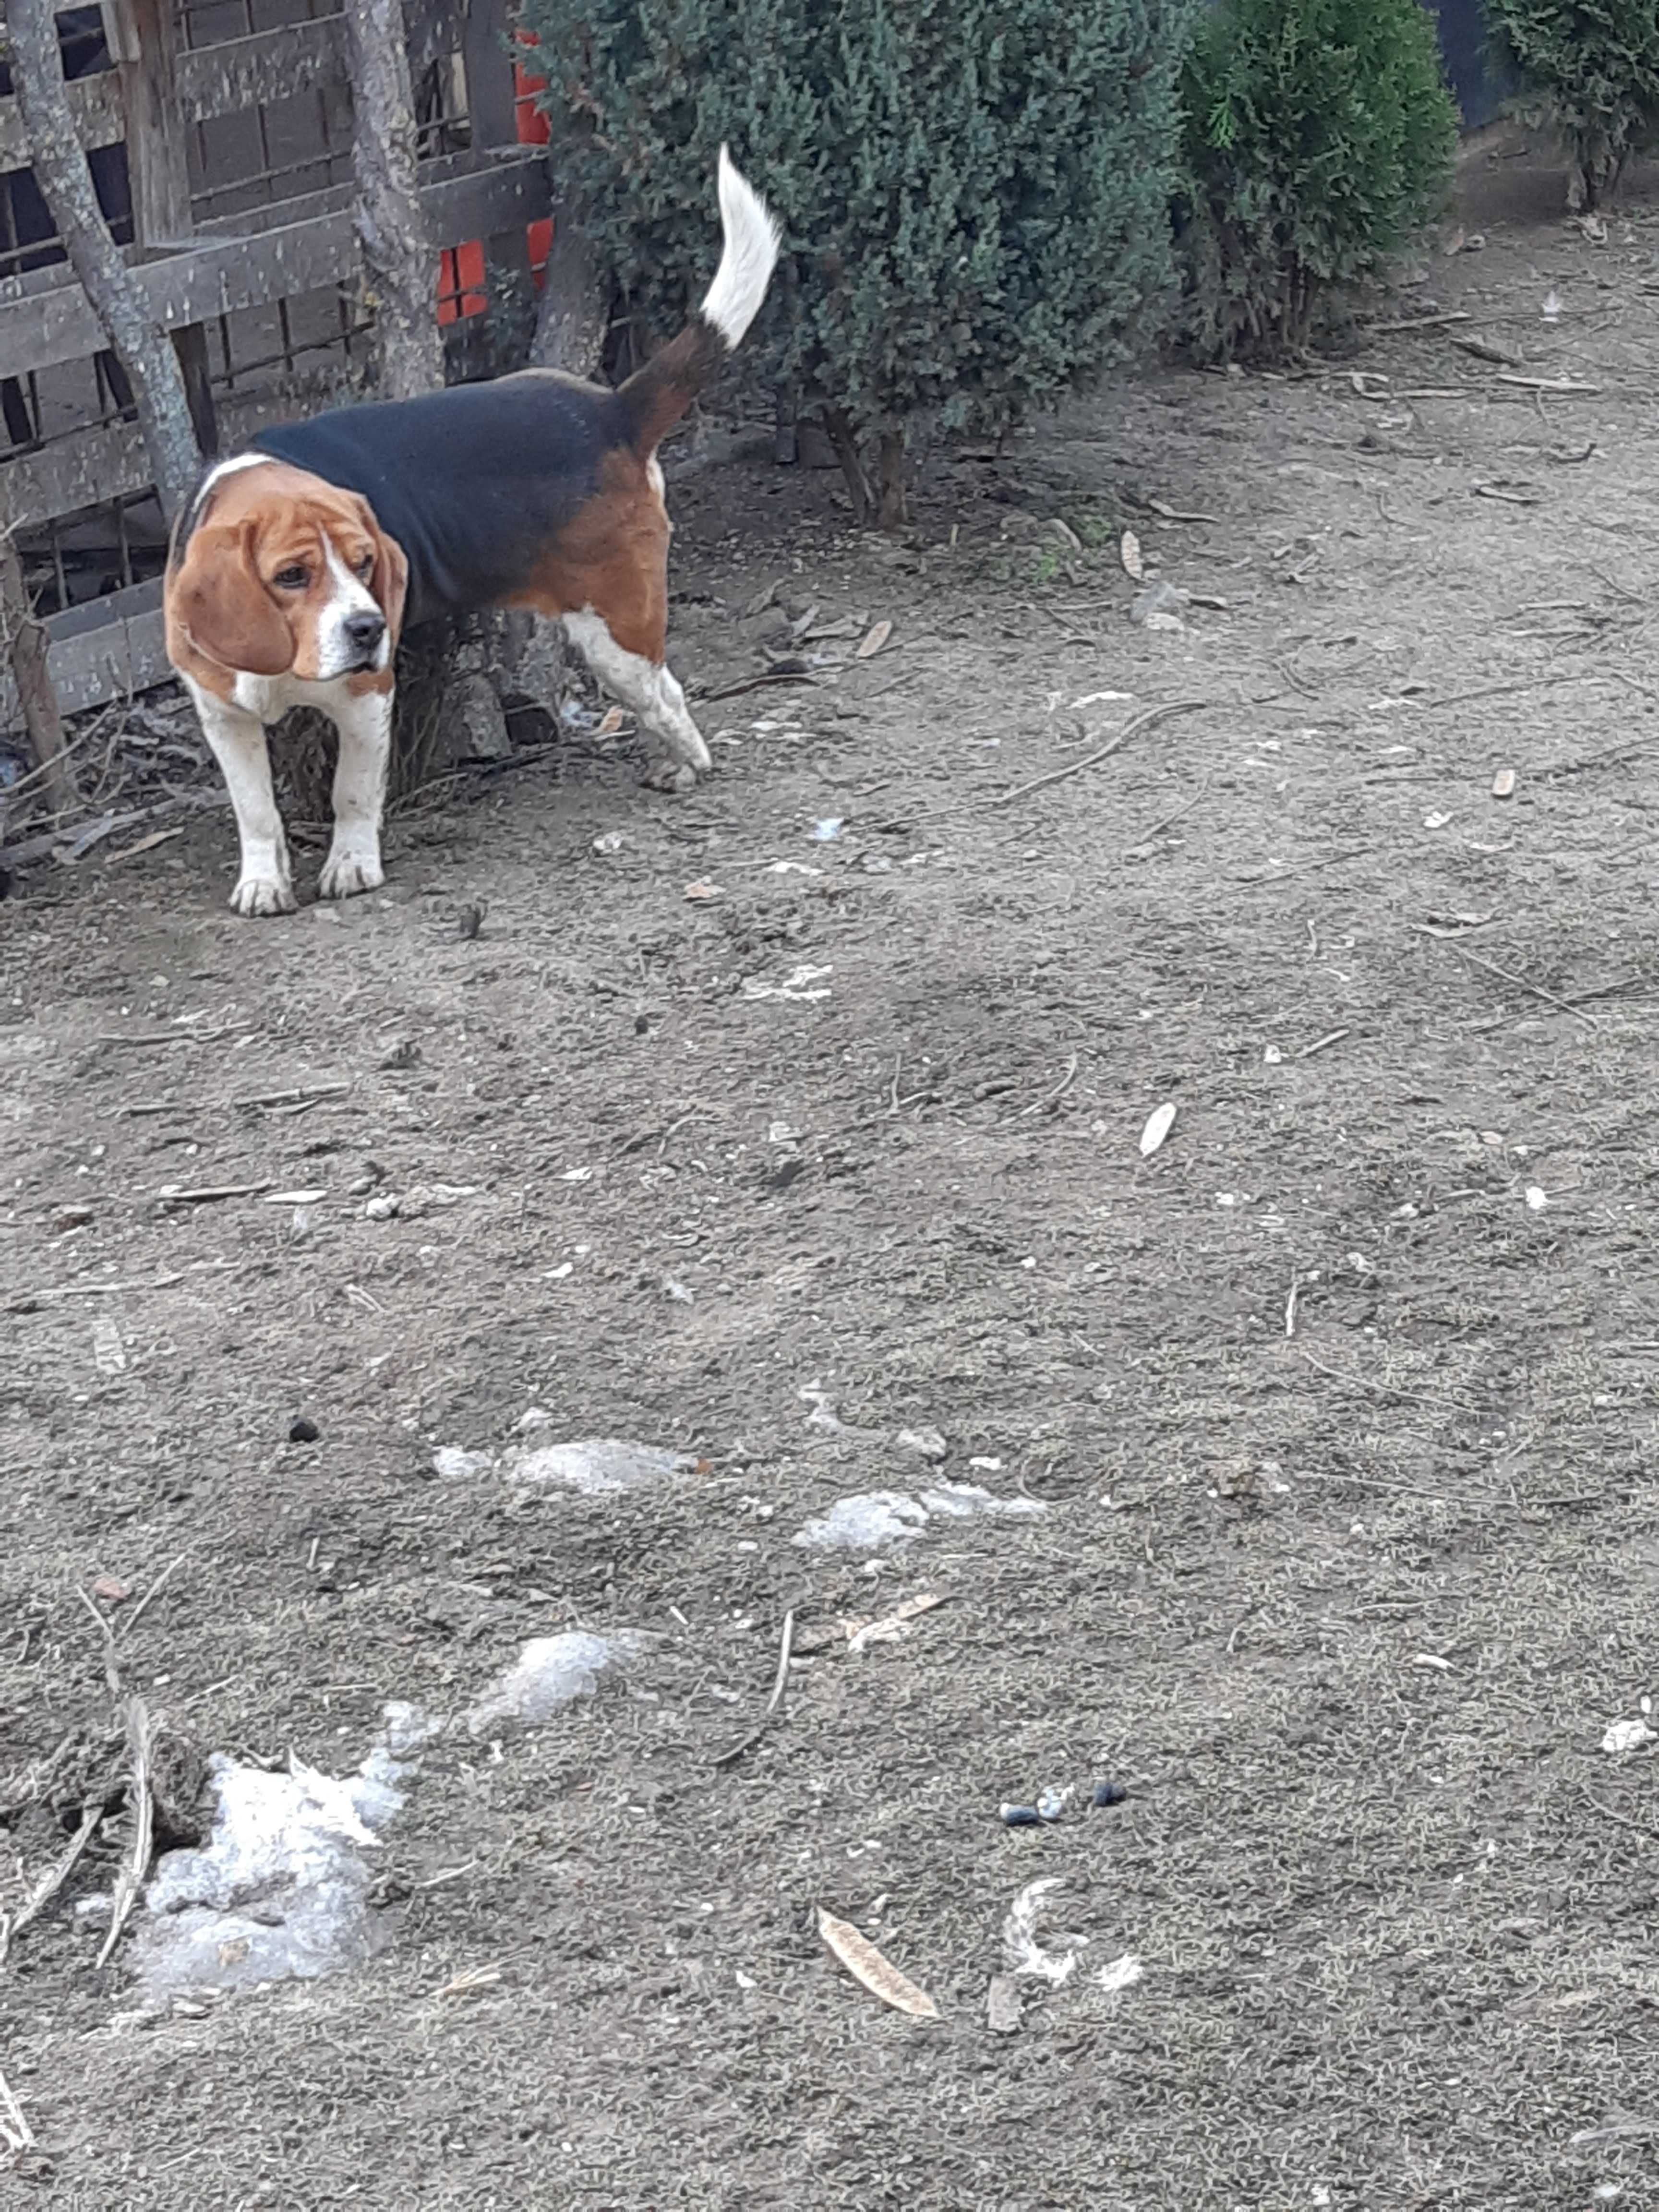 Mascul beagle rasa pura